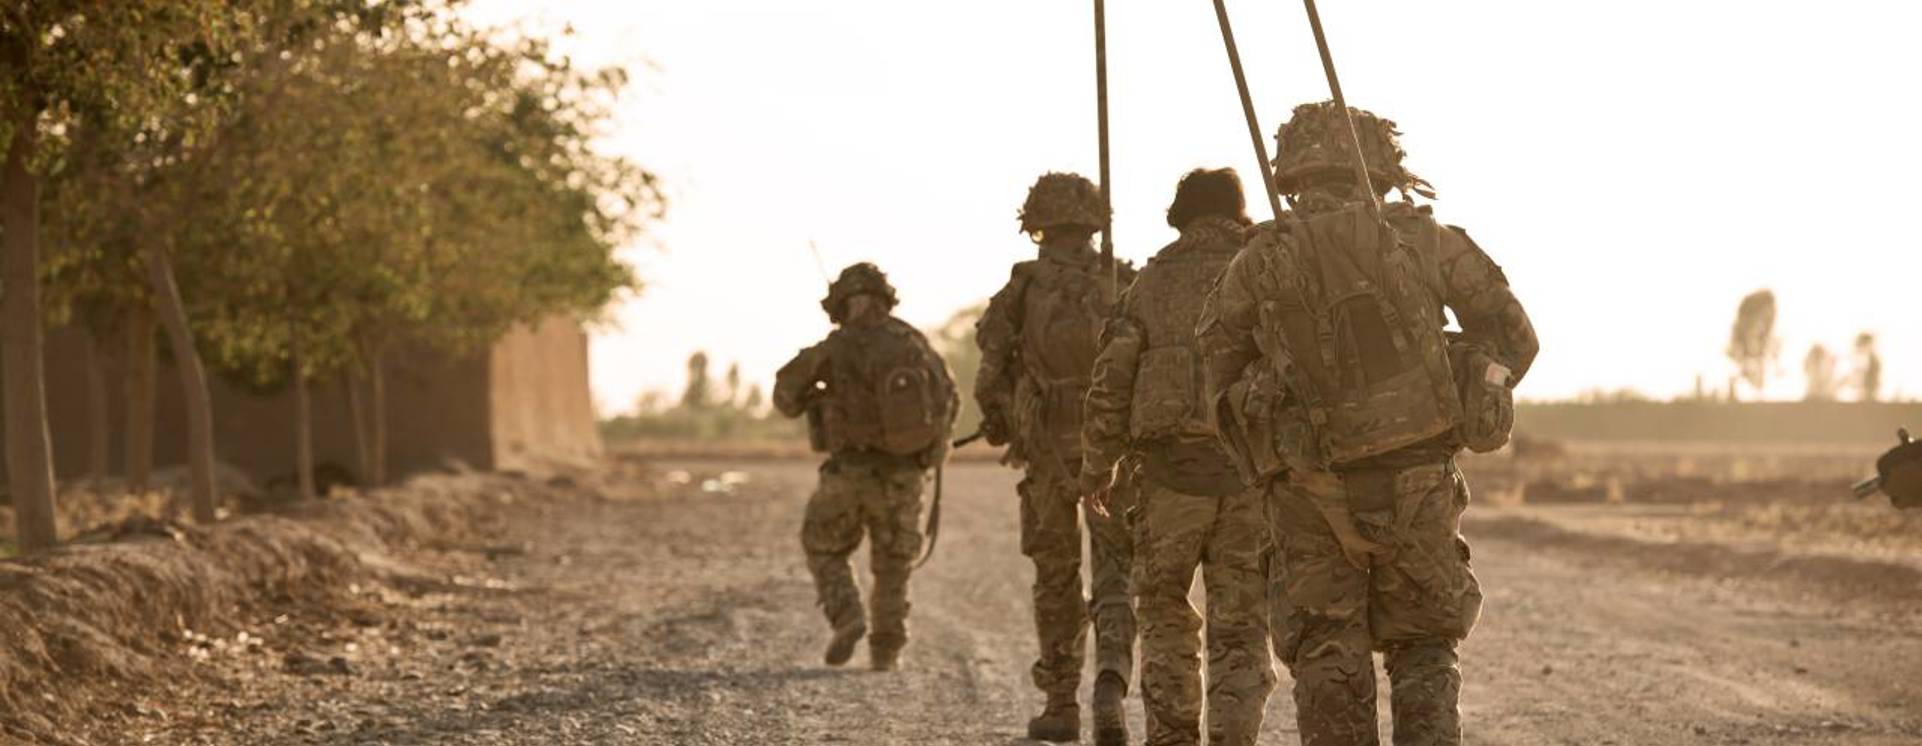 Soldiers on patrol in Afghanistan